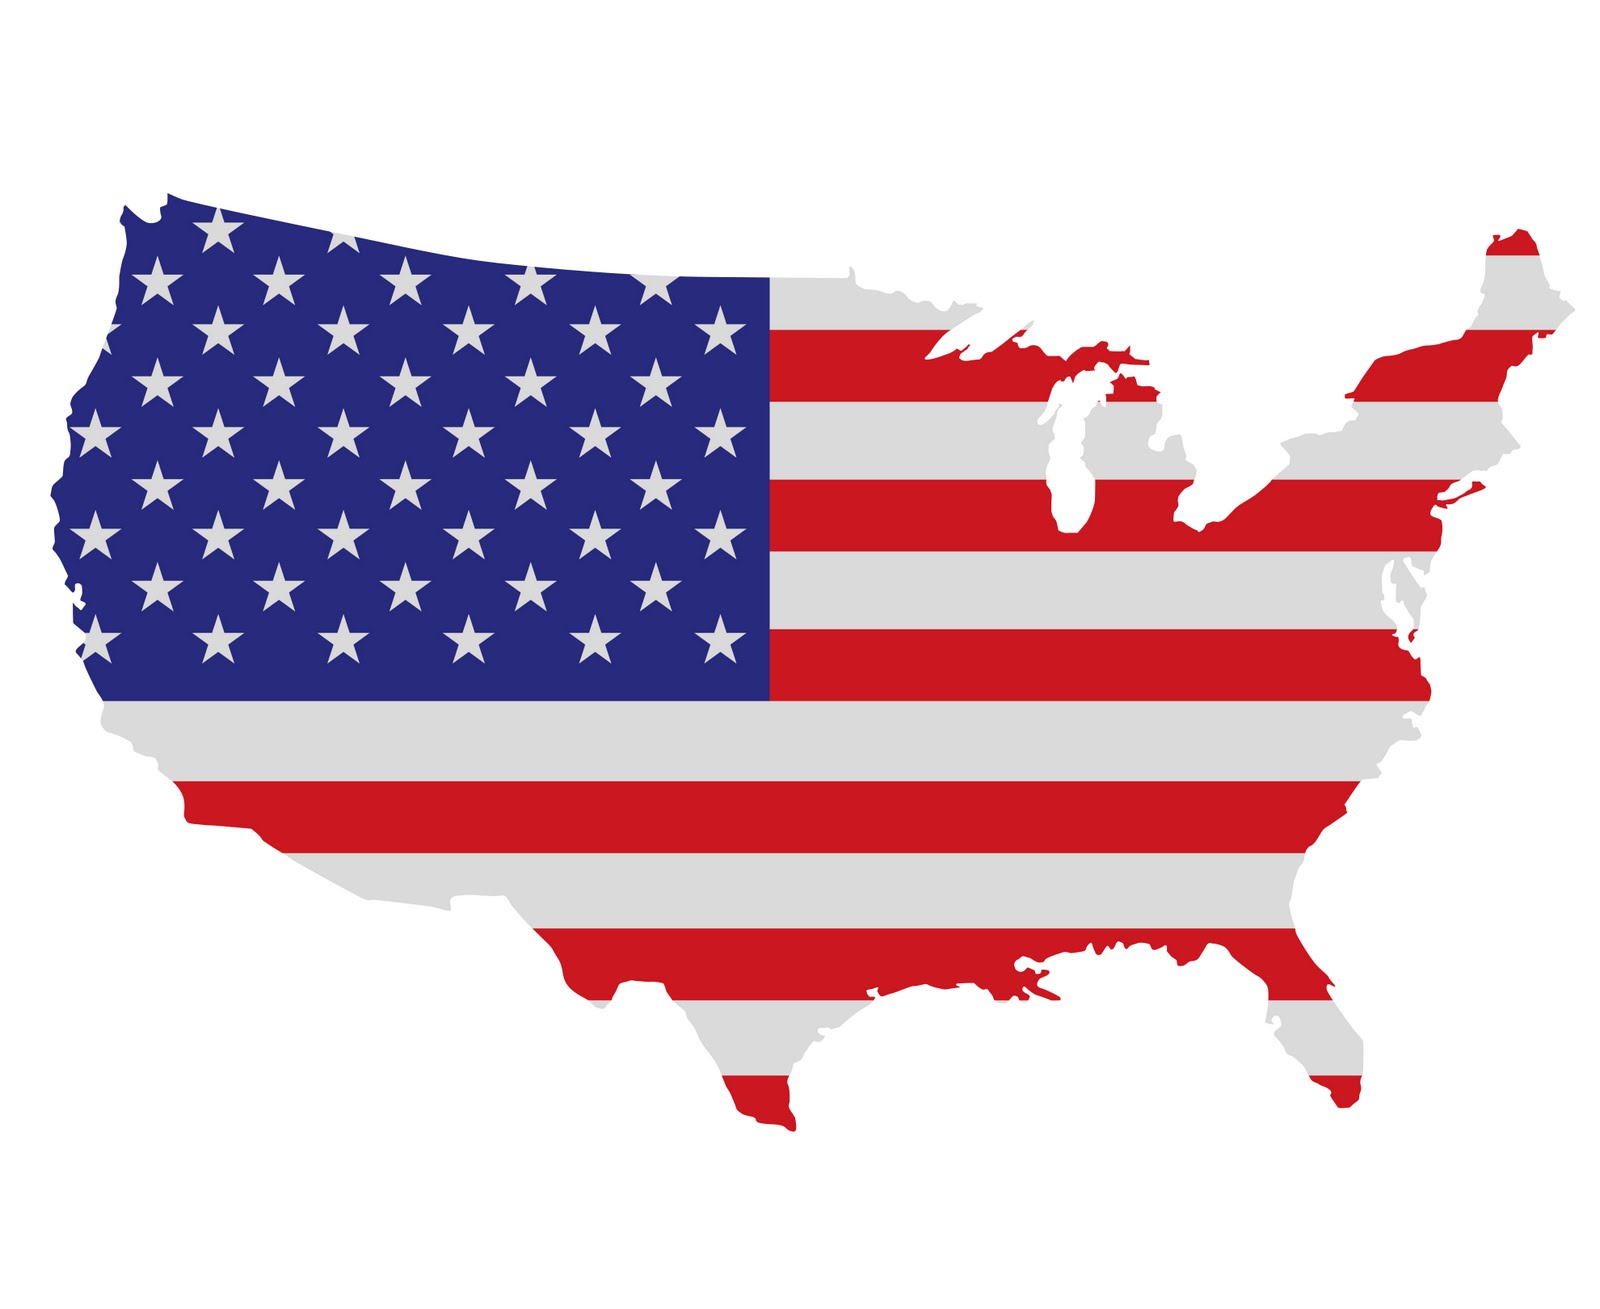 USA, exports + 4% – RisoItaliano